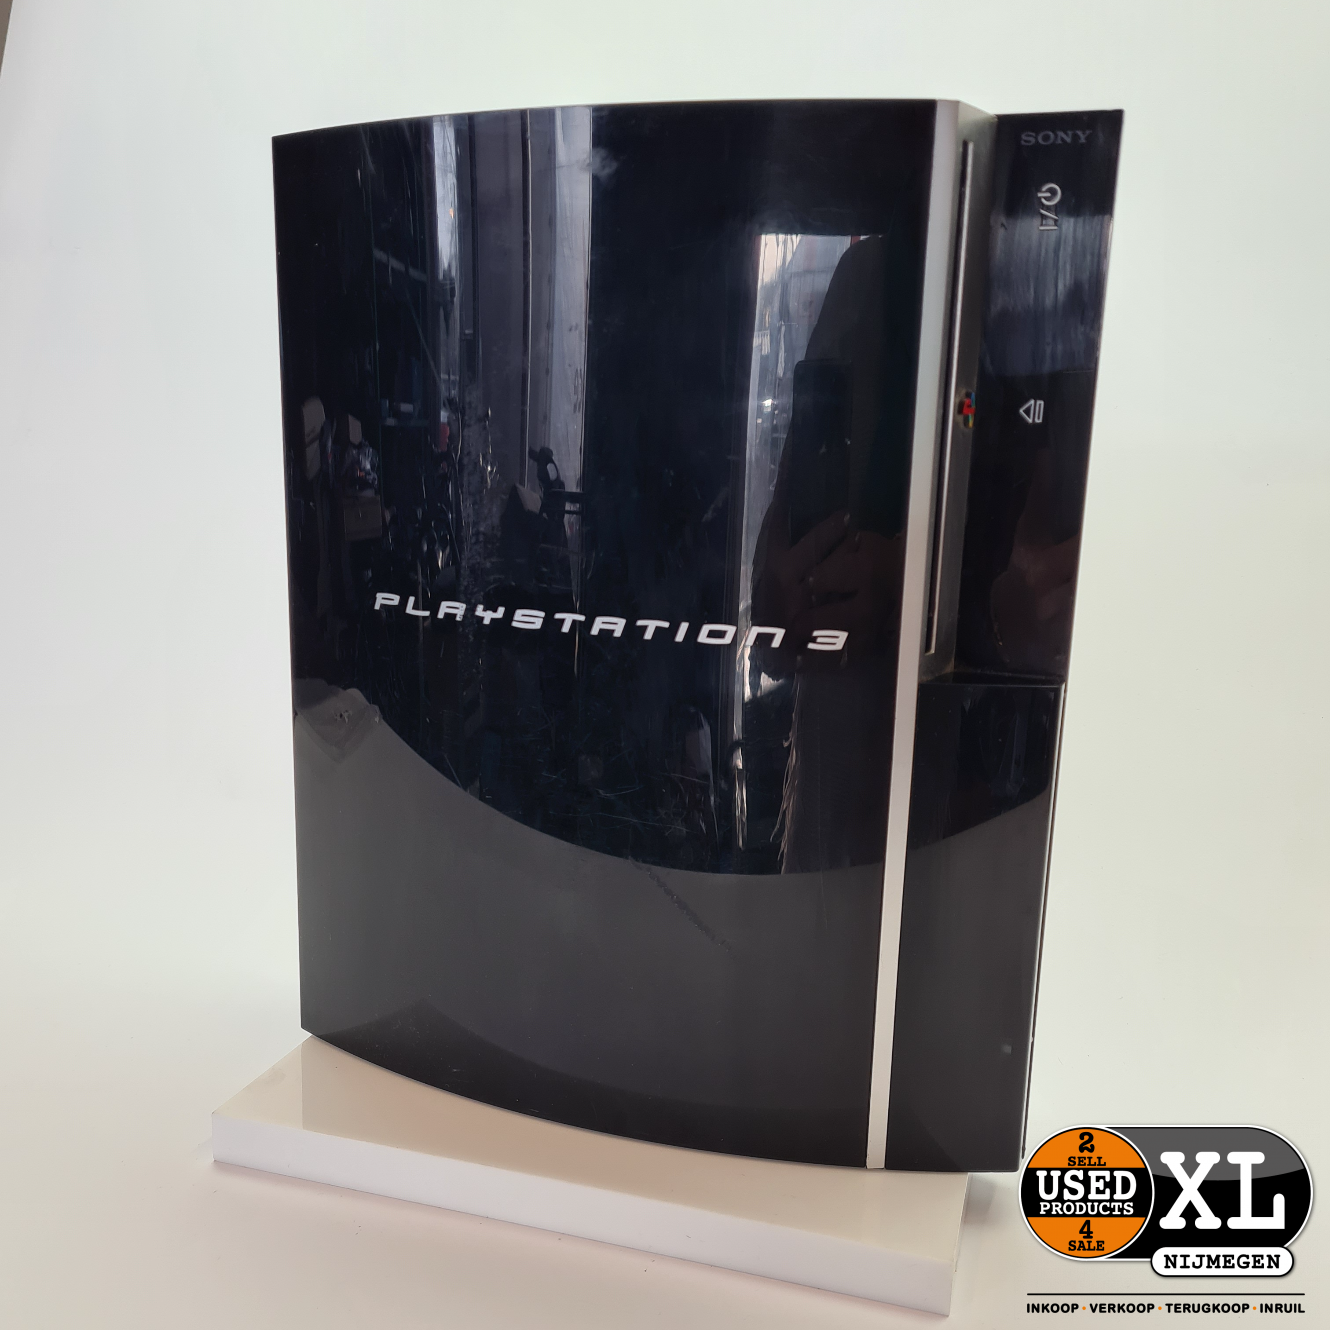 Prehistorisch risico Maak het zwaar Playstation 3 Original 80GB Console Zwart | met Garantie - Used Products  Nijmegen XL